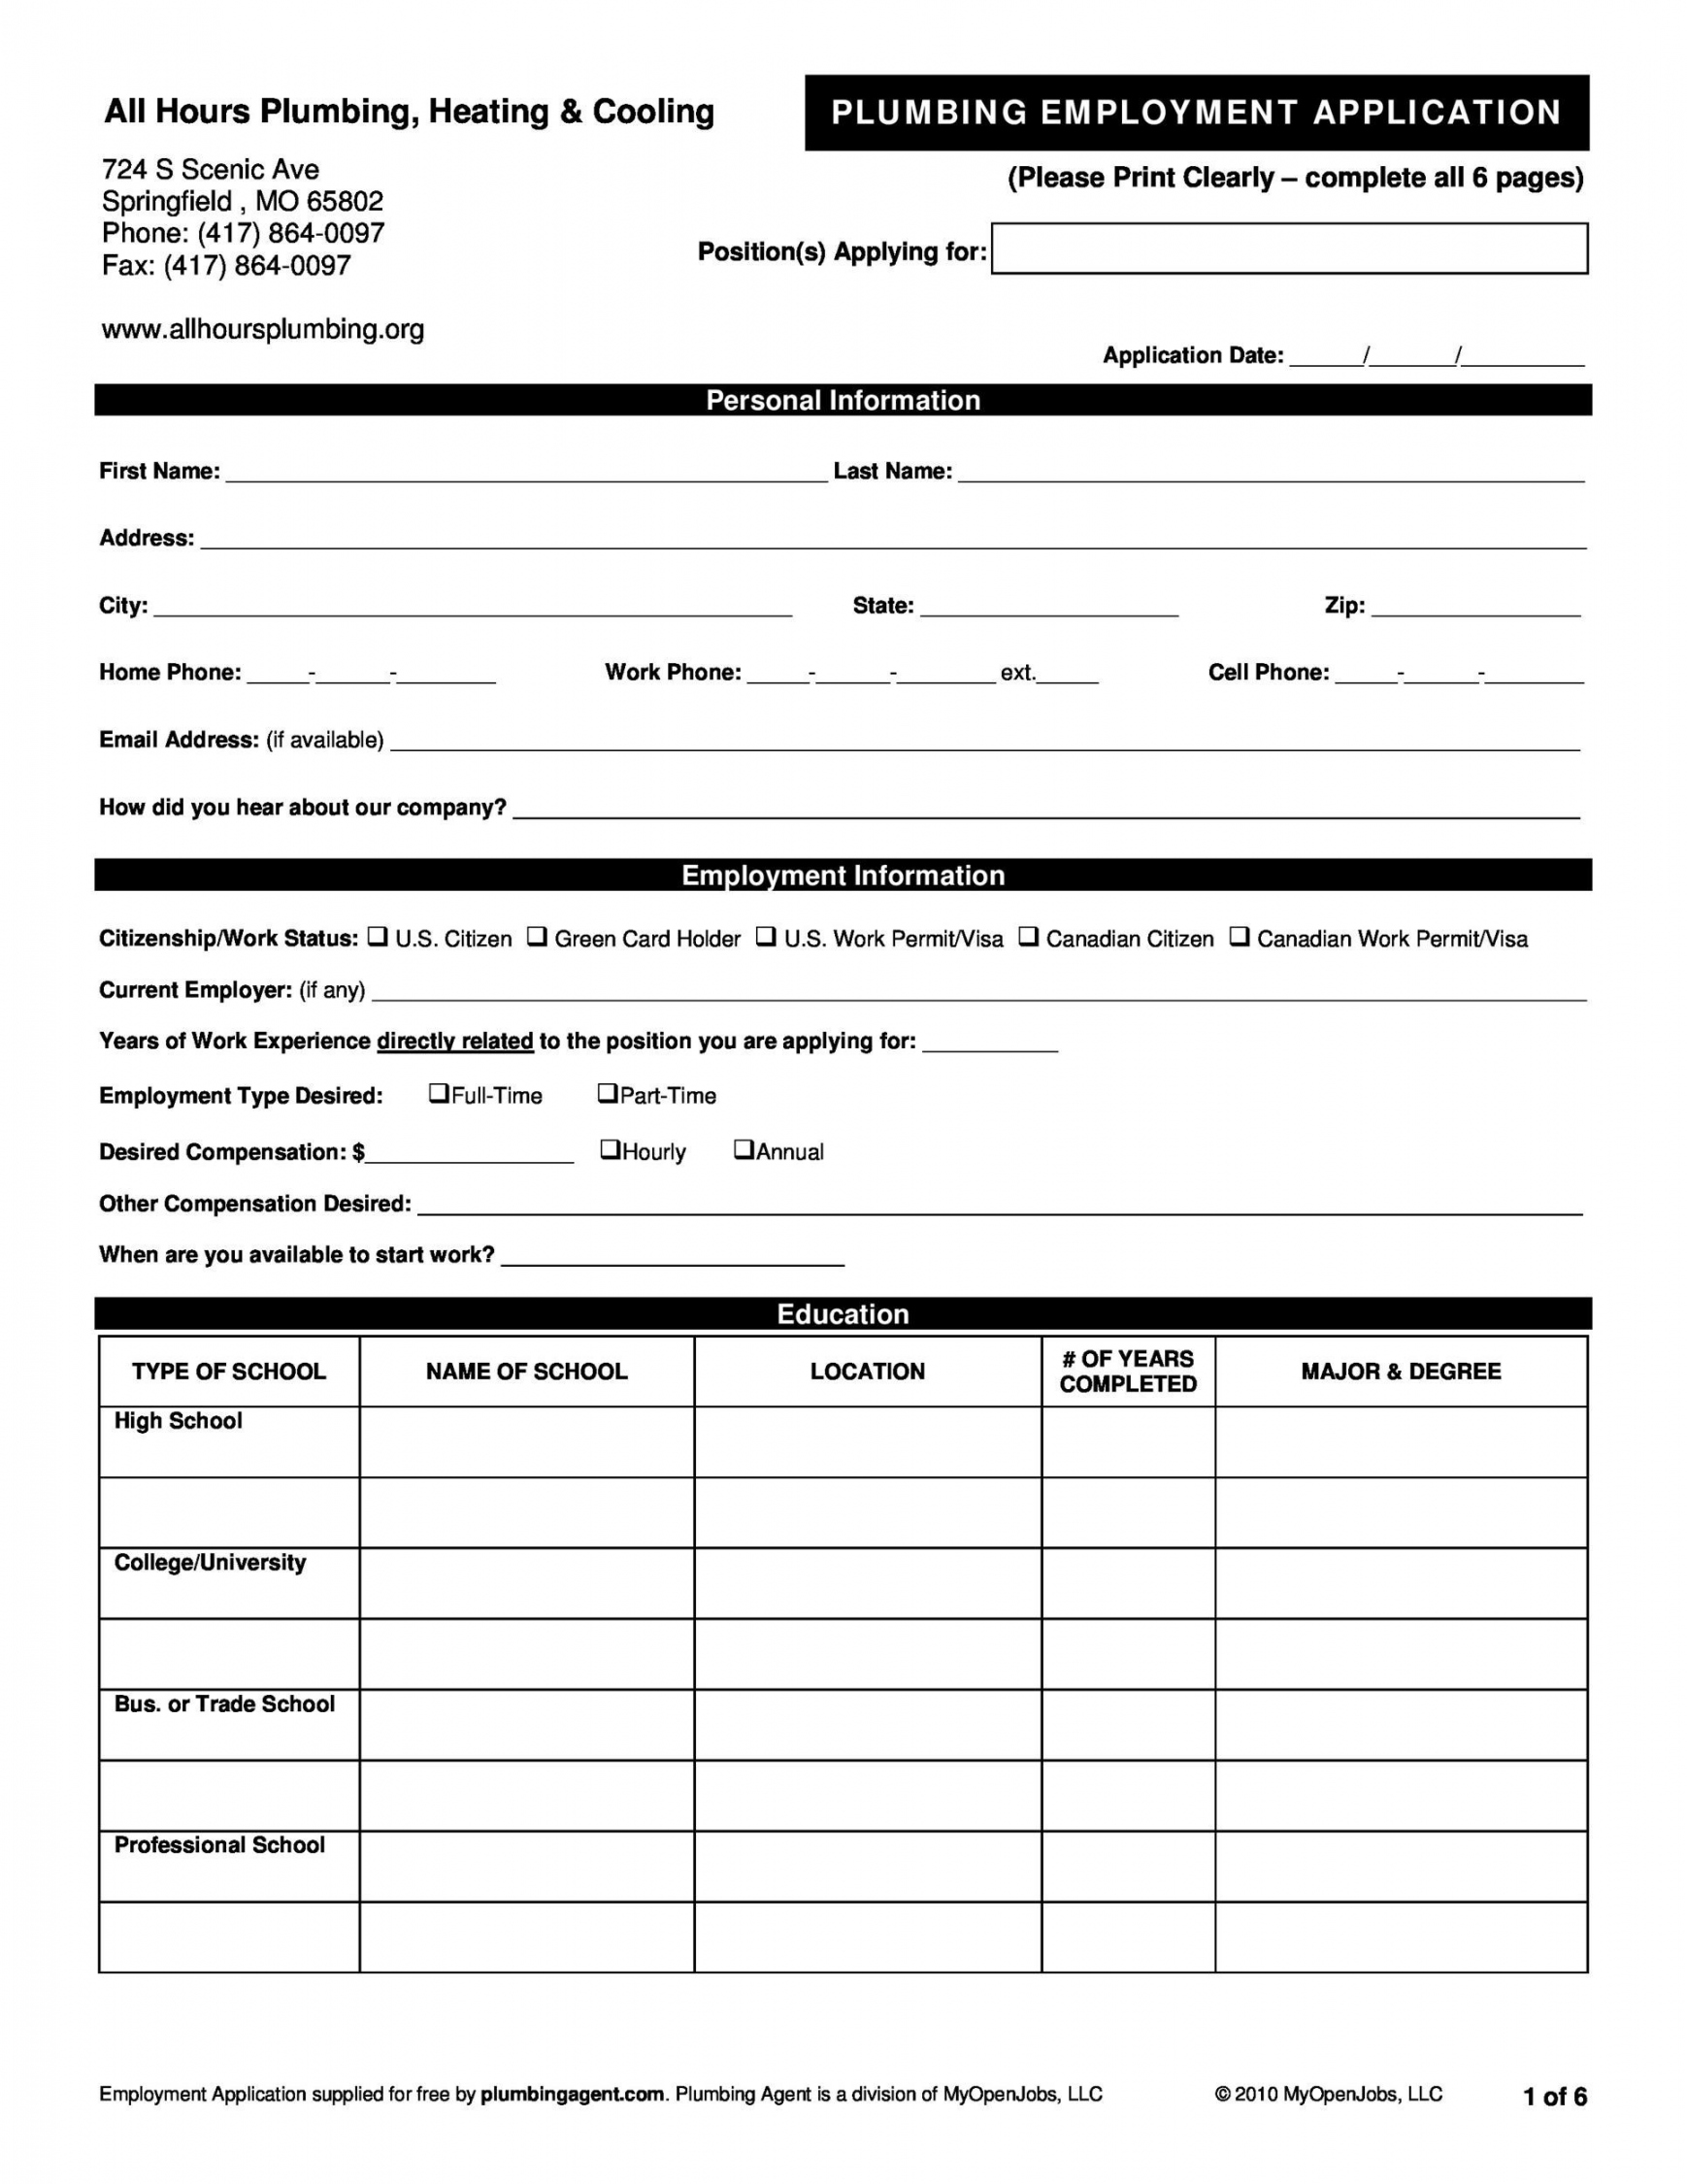 Free Printable Job Applications - Printable -  Free Employment / Job Application Form Templates [Printable] ᐅ